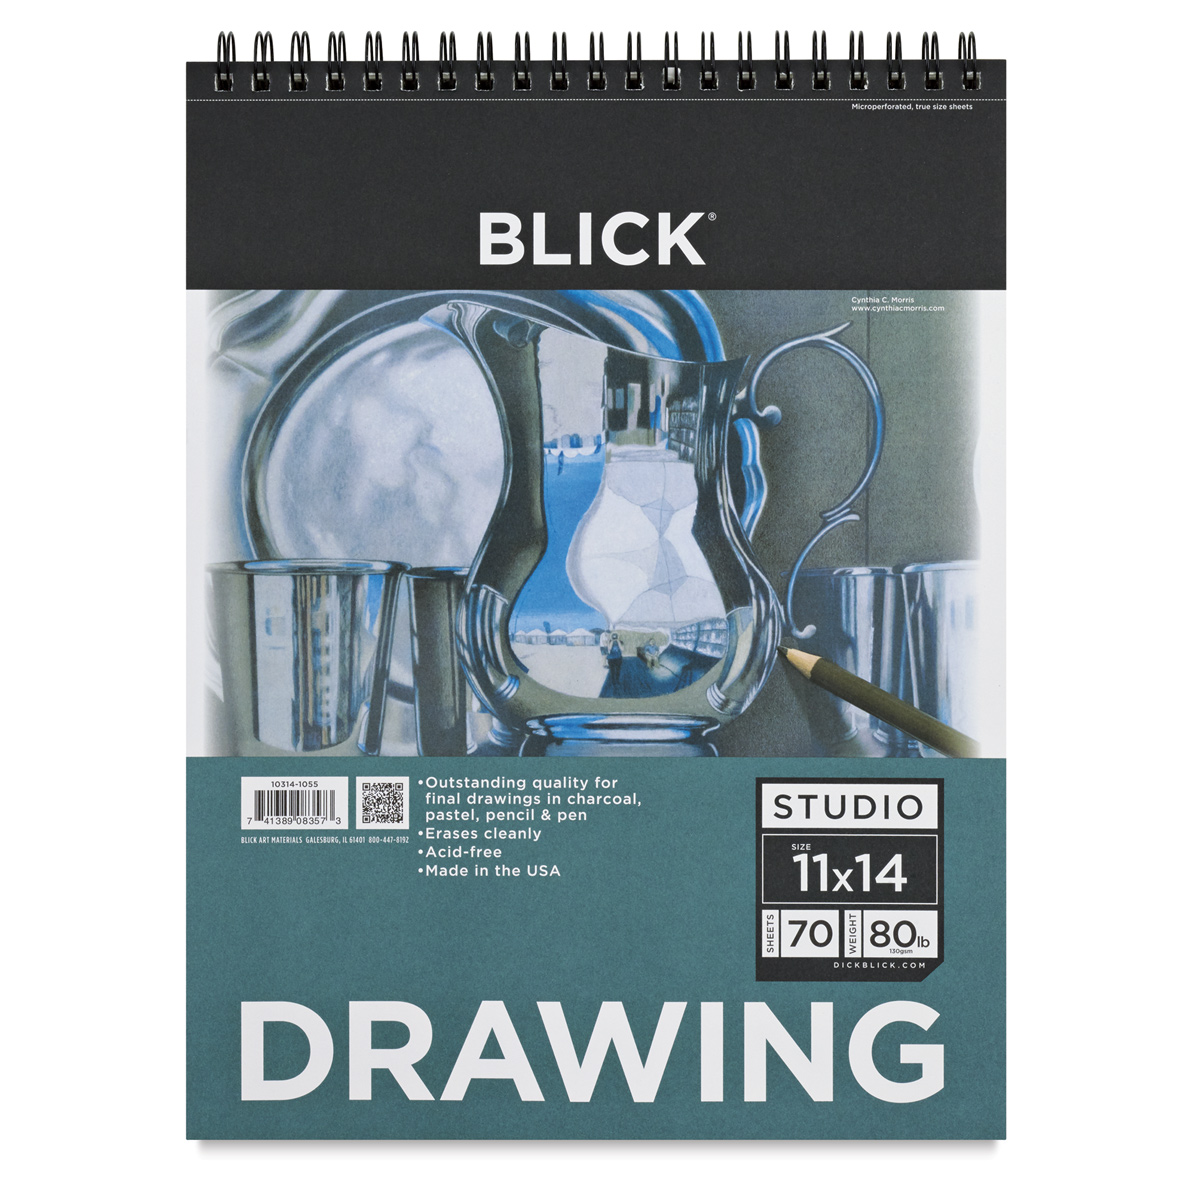 Blick Studio Drawing Pad 11" x 14", 70 Sheets BLICK Art Materials